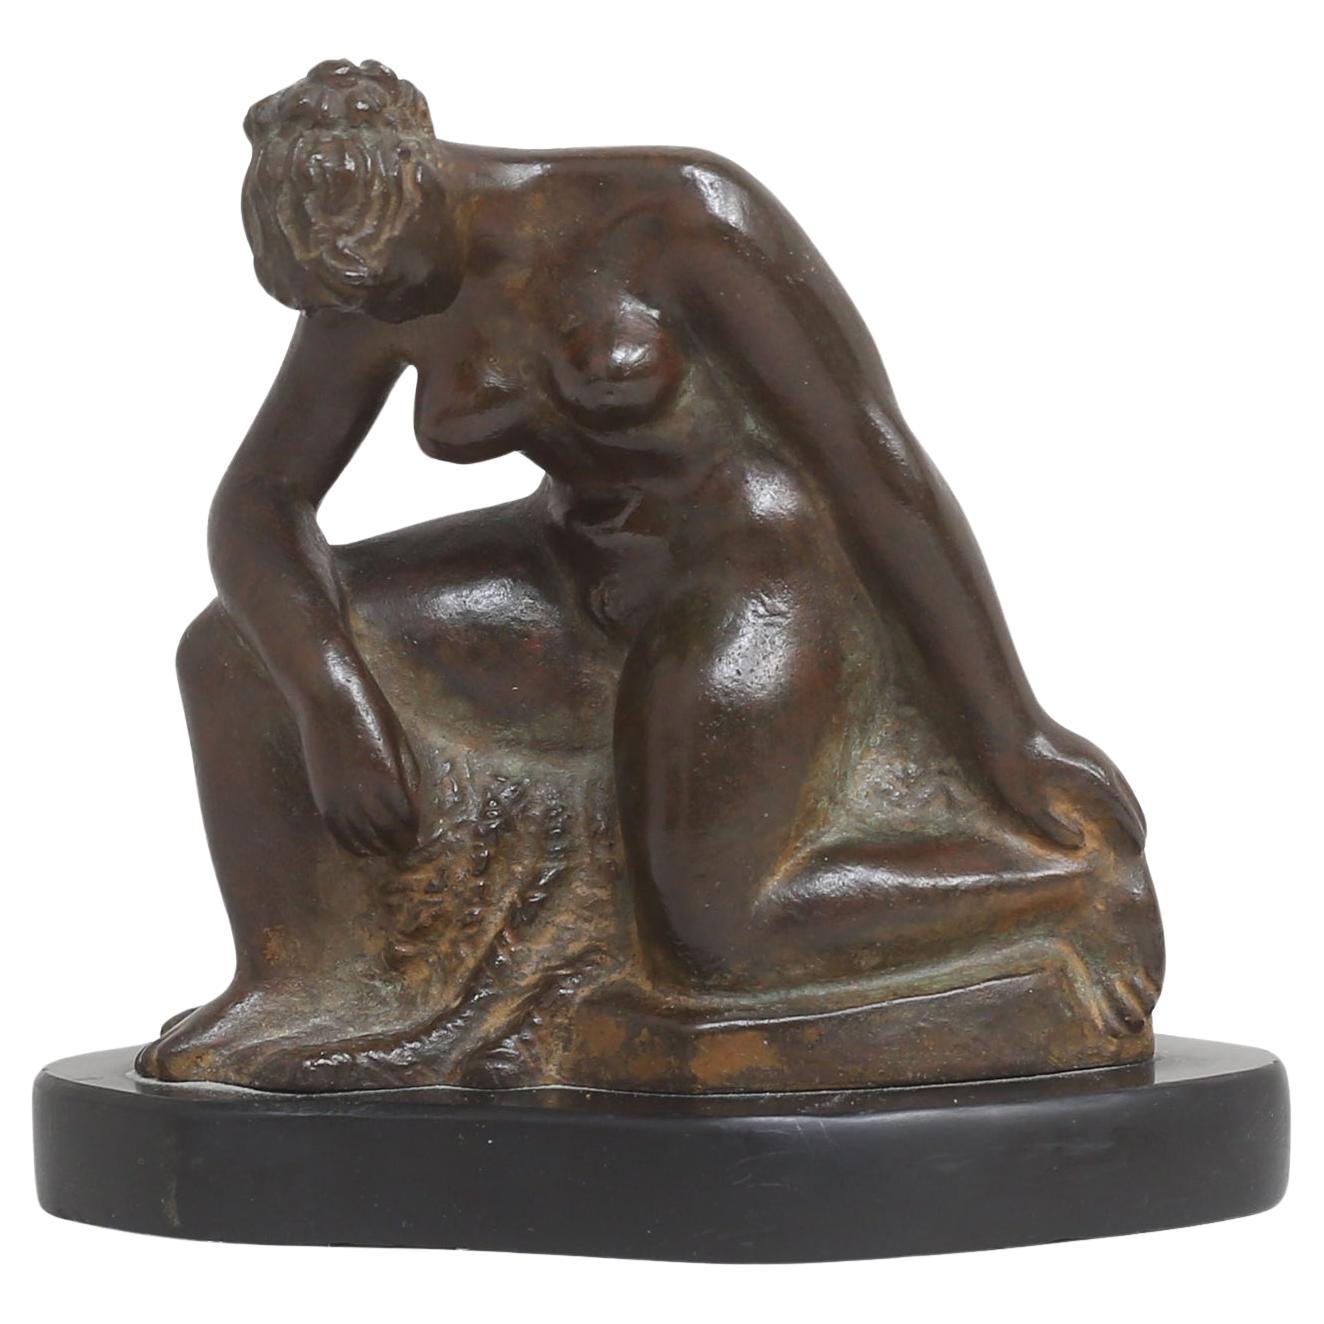 Estampillé par l'artiste suédois Torolf Engström. Exécuté en bronze, numéro 1 sur 10 éditions. Moulage par E. Pettersson FUD.

La sculpture suédoise moderne de nu 